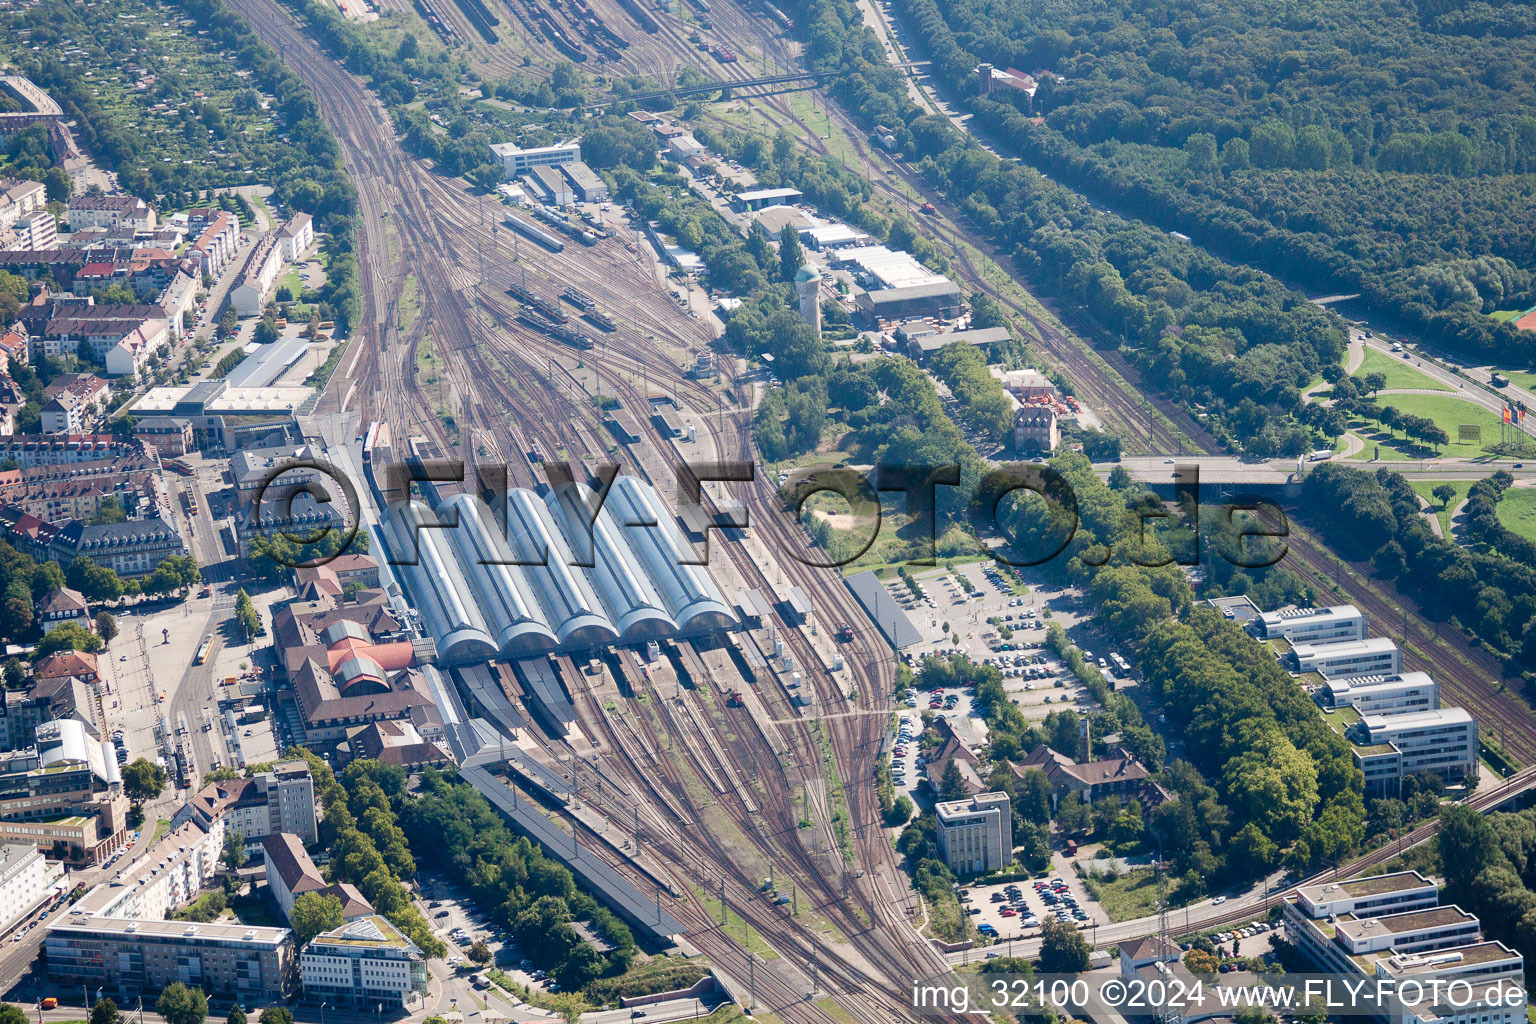 Gleisverlauf und Gebäude des Hauptbahnhofes der Deutschen Bahn in Karlsruhe im Ortsteil Südweststadt im Bundesland Baden-Württemberg, Deutschland von oben gesehen